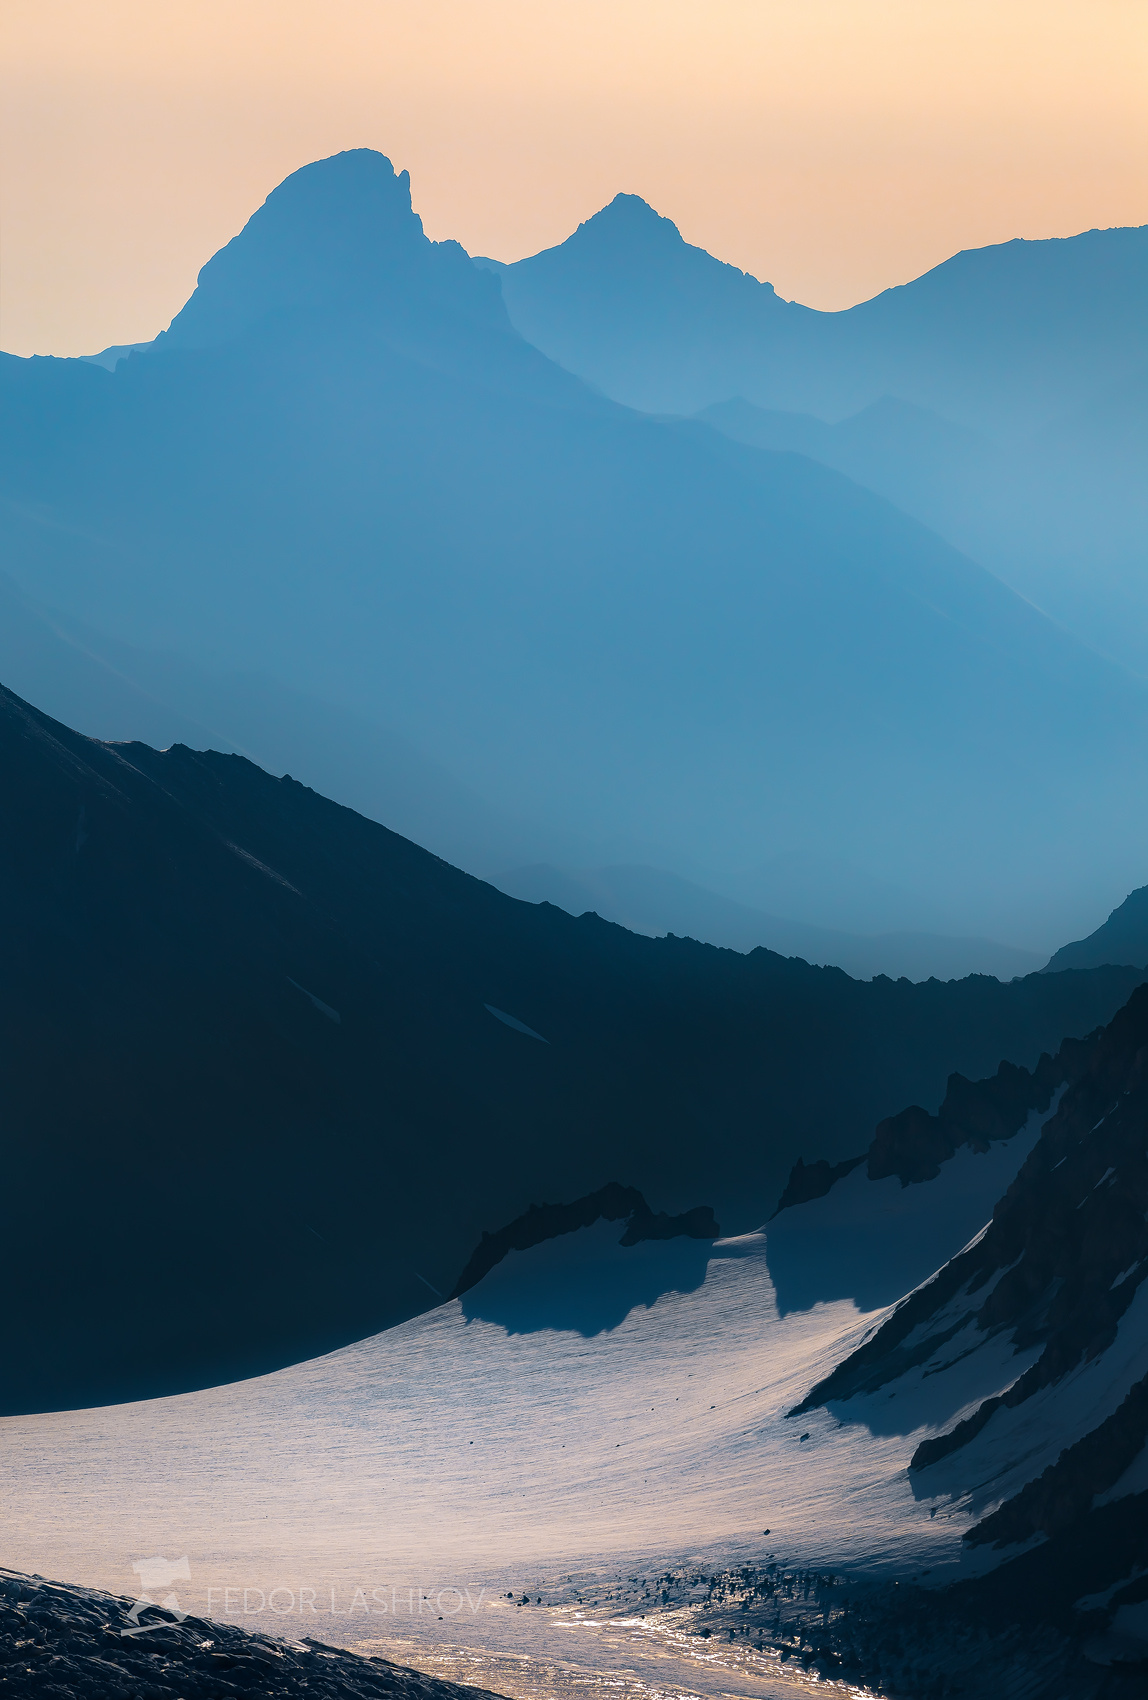 Синева гор Северный Кавказ Кабардино-Балкарская Кавказский хребет путешествие горы Приэльбрусье ледники суровый скалы вершина освещение дымка утро рассвет силуэты